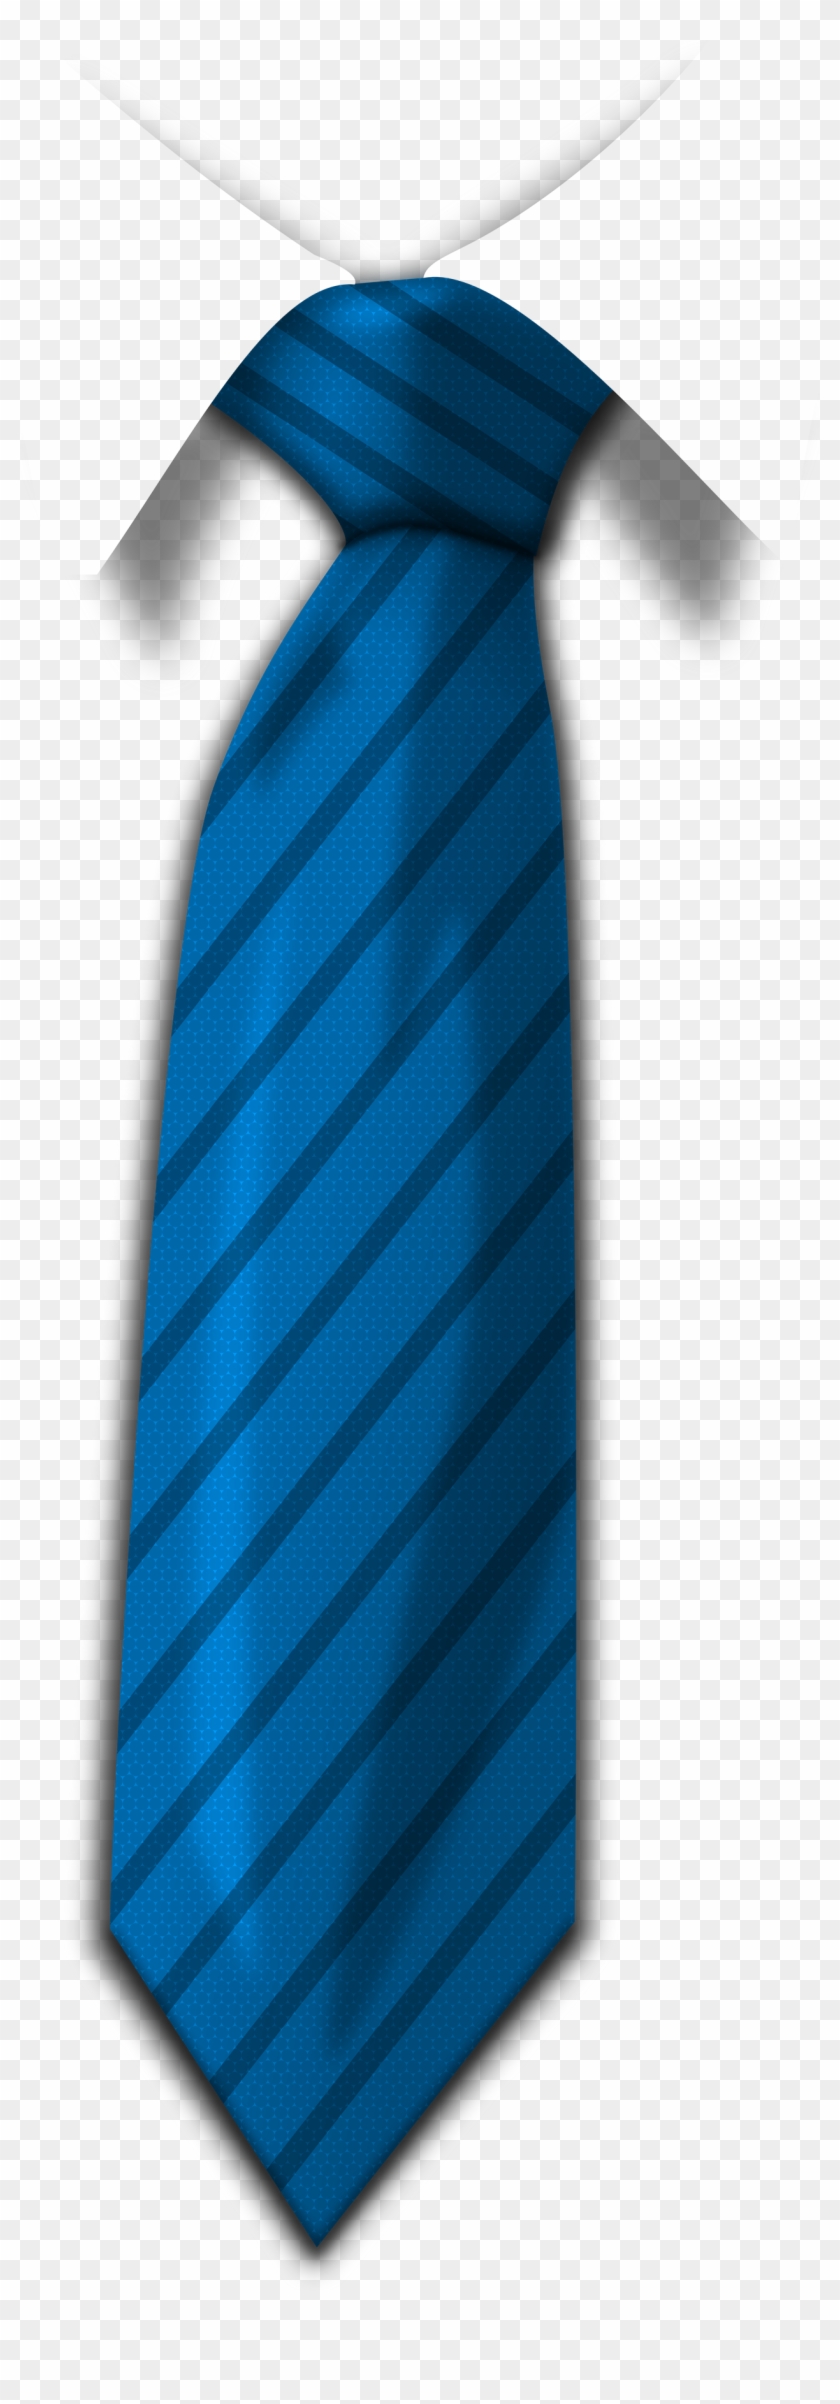 Blue Tie Png Image - Blue Tie Png Clipart #481590